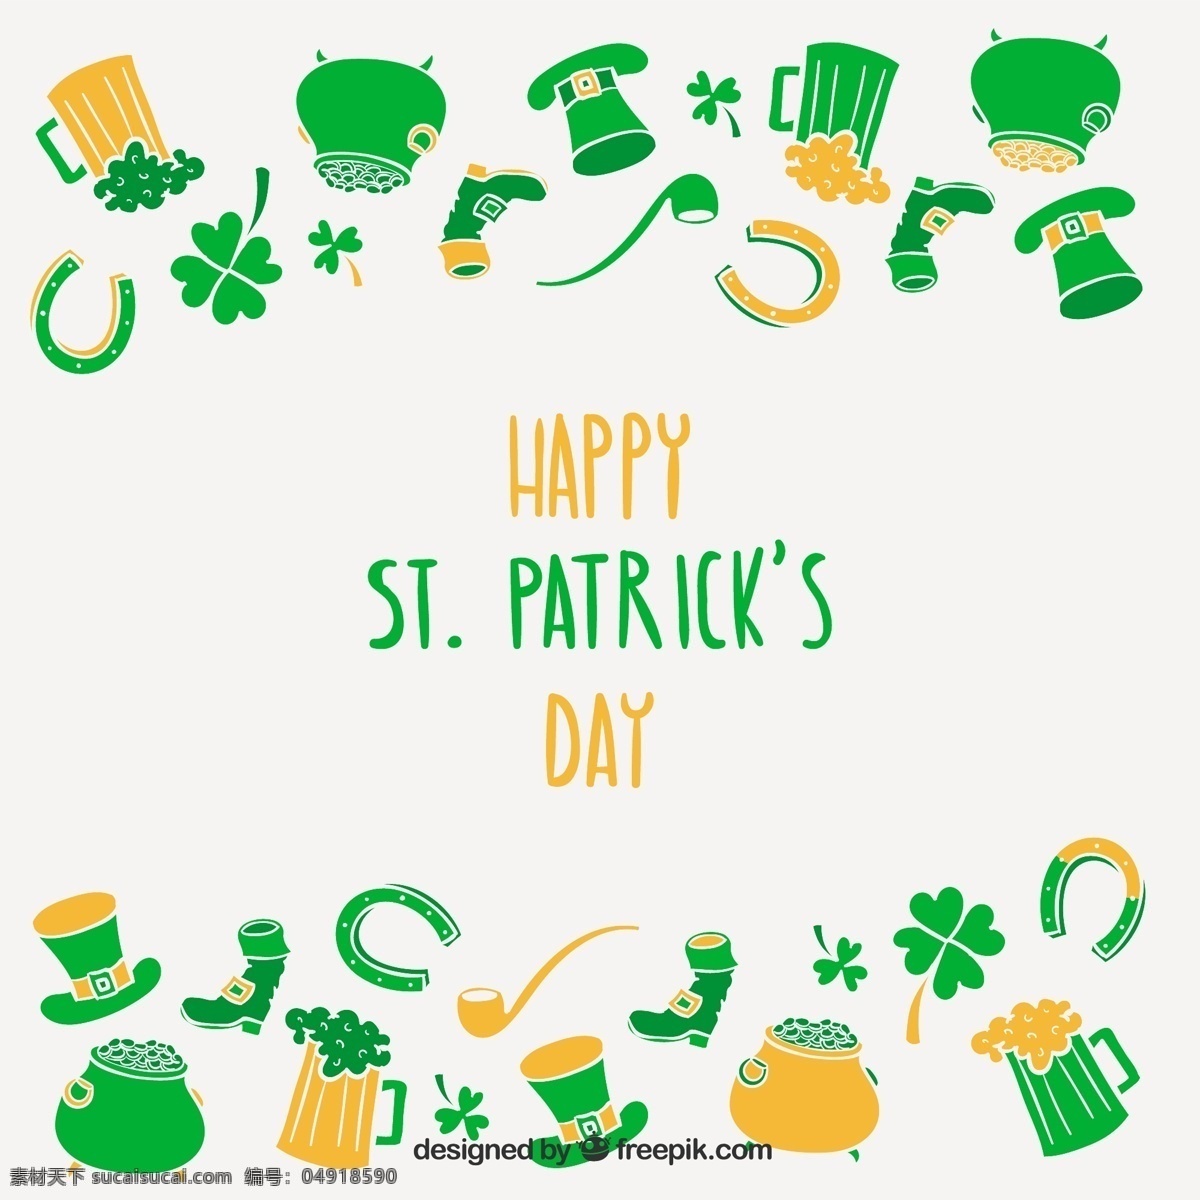 三叶草背景 背景 啤酒 绿色 环保 帽子 节假日 st 帕特里克 问候语 马蹄 爱尔兰 圣帕特里克引 传统 魅力